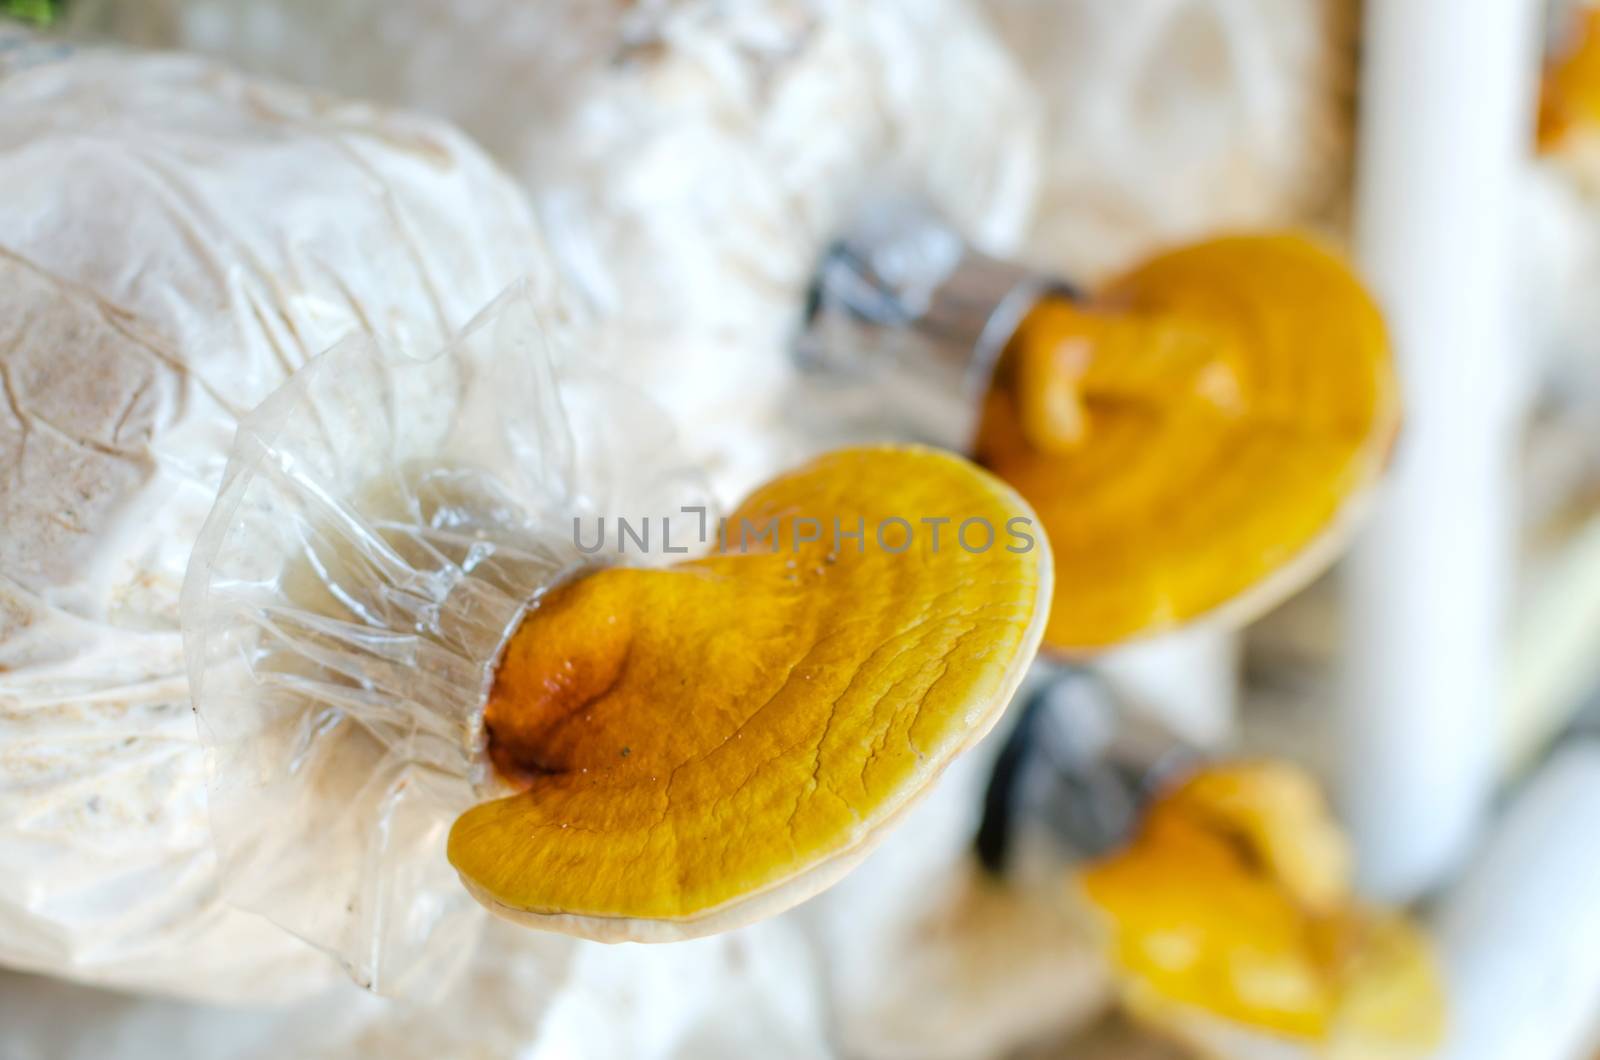 Lingzhi,Ganoderma lucidum mushroom by nop16